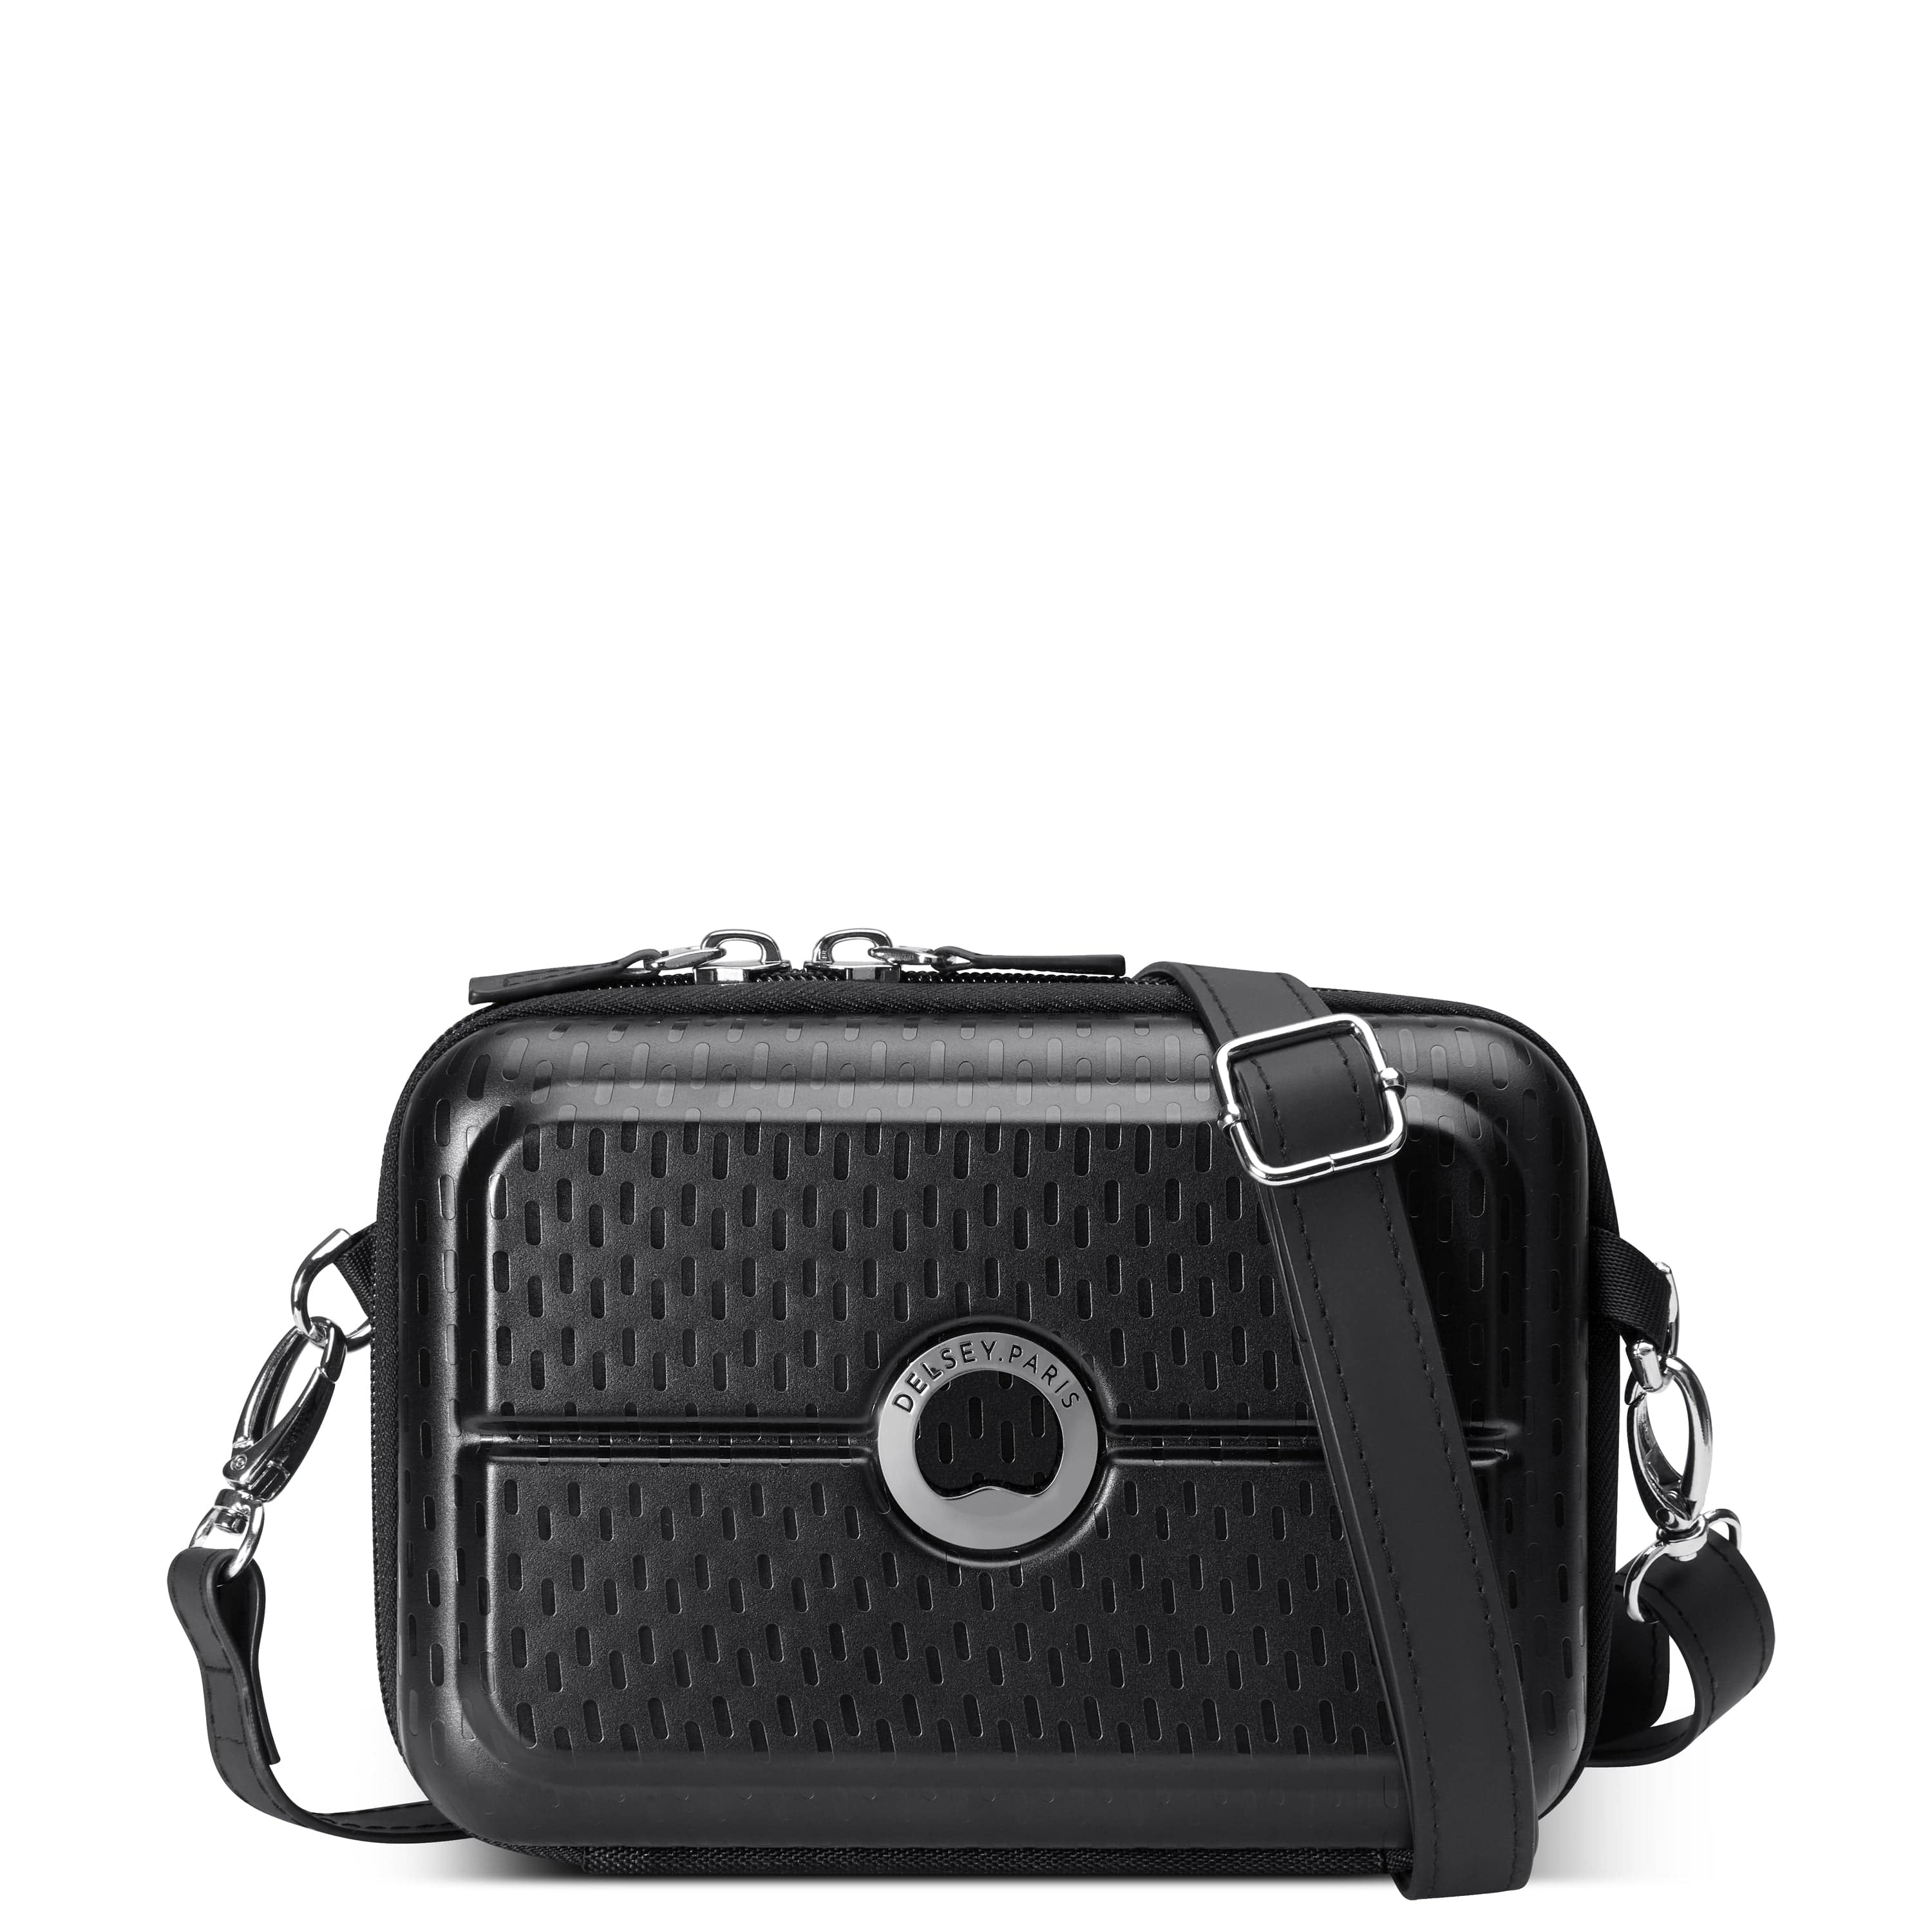 Delsey Turenne Hardcase Clutch With Removable Shoulder Strap Black - 00162111500